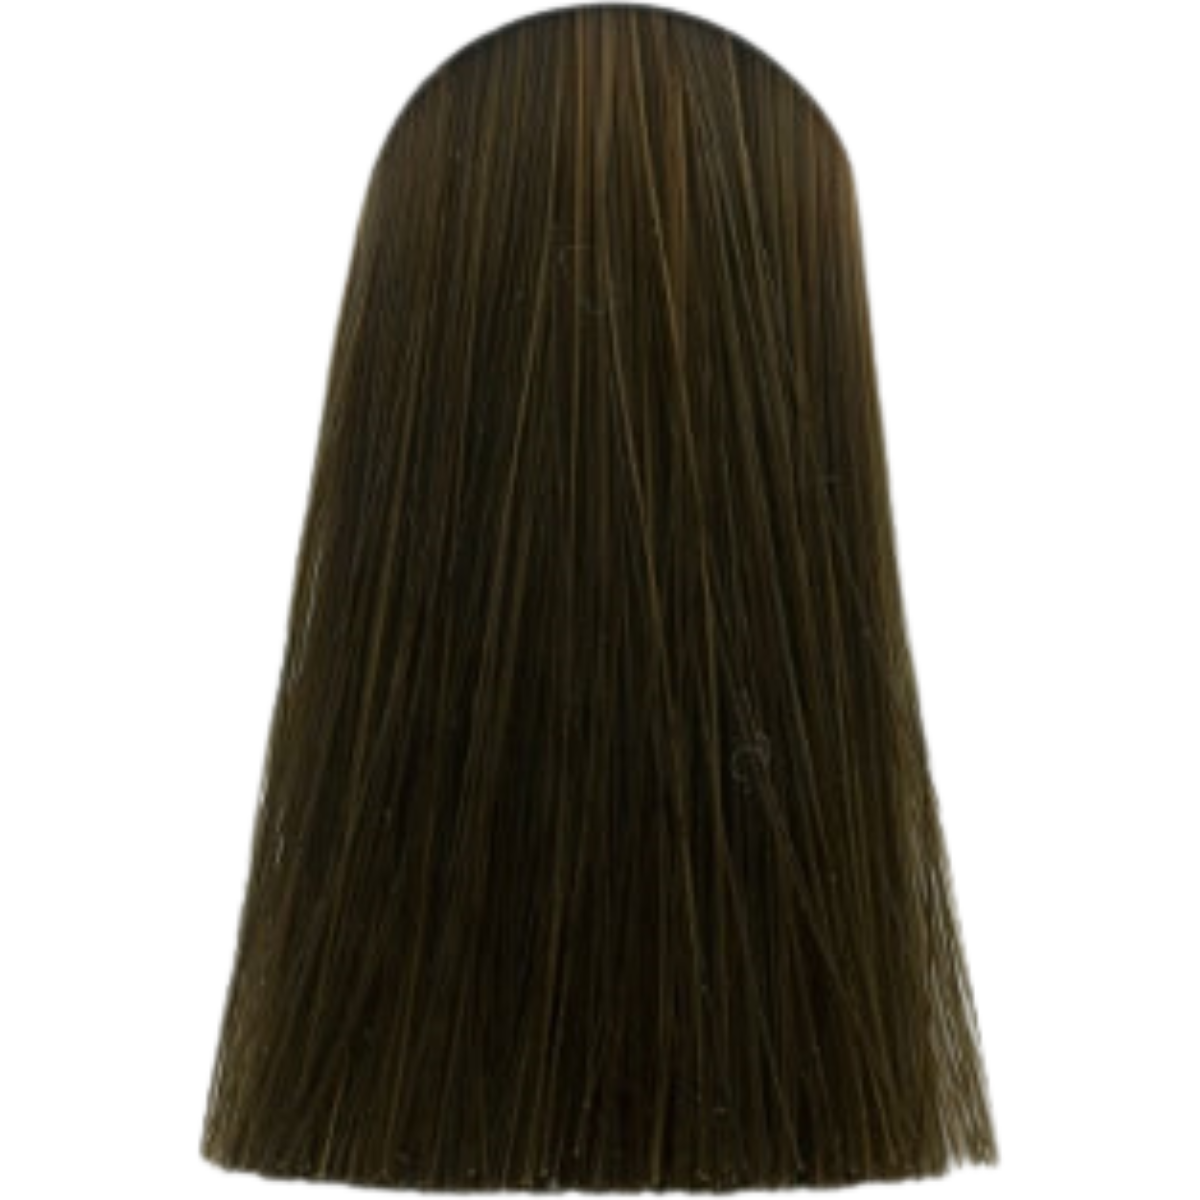 צבע לשיער בסיס מחוזק 7.00 MEDIUM BLONDE INTENSE NATURAL אינדולה INDOLA צבע לשיער 60 גרם